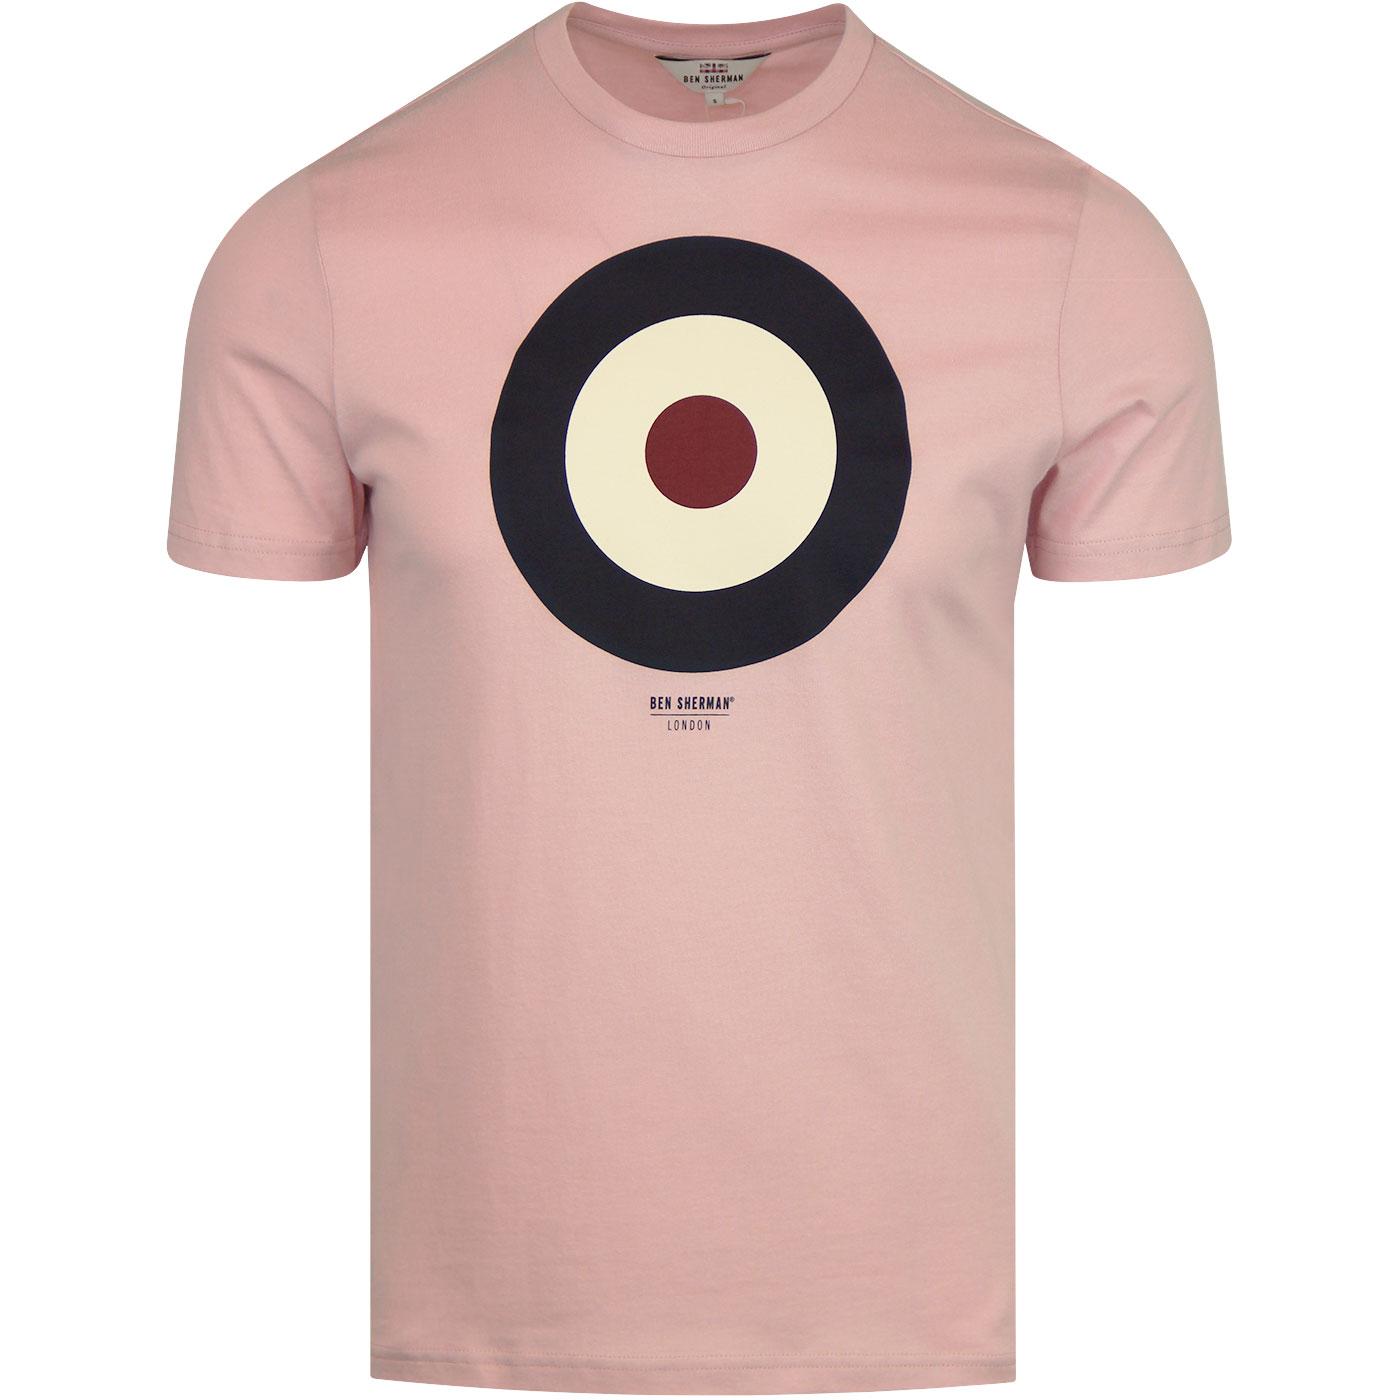 BEN SHERMAN Retro Mod Target T-Shirt (Pale Pink)